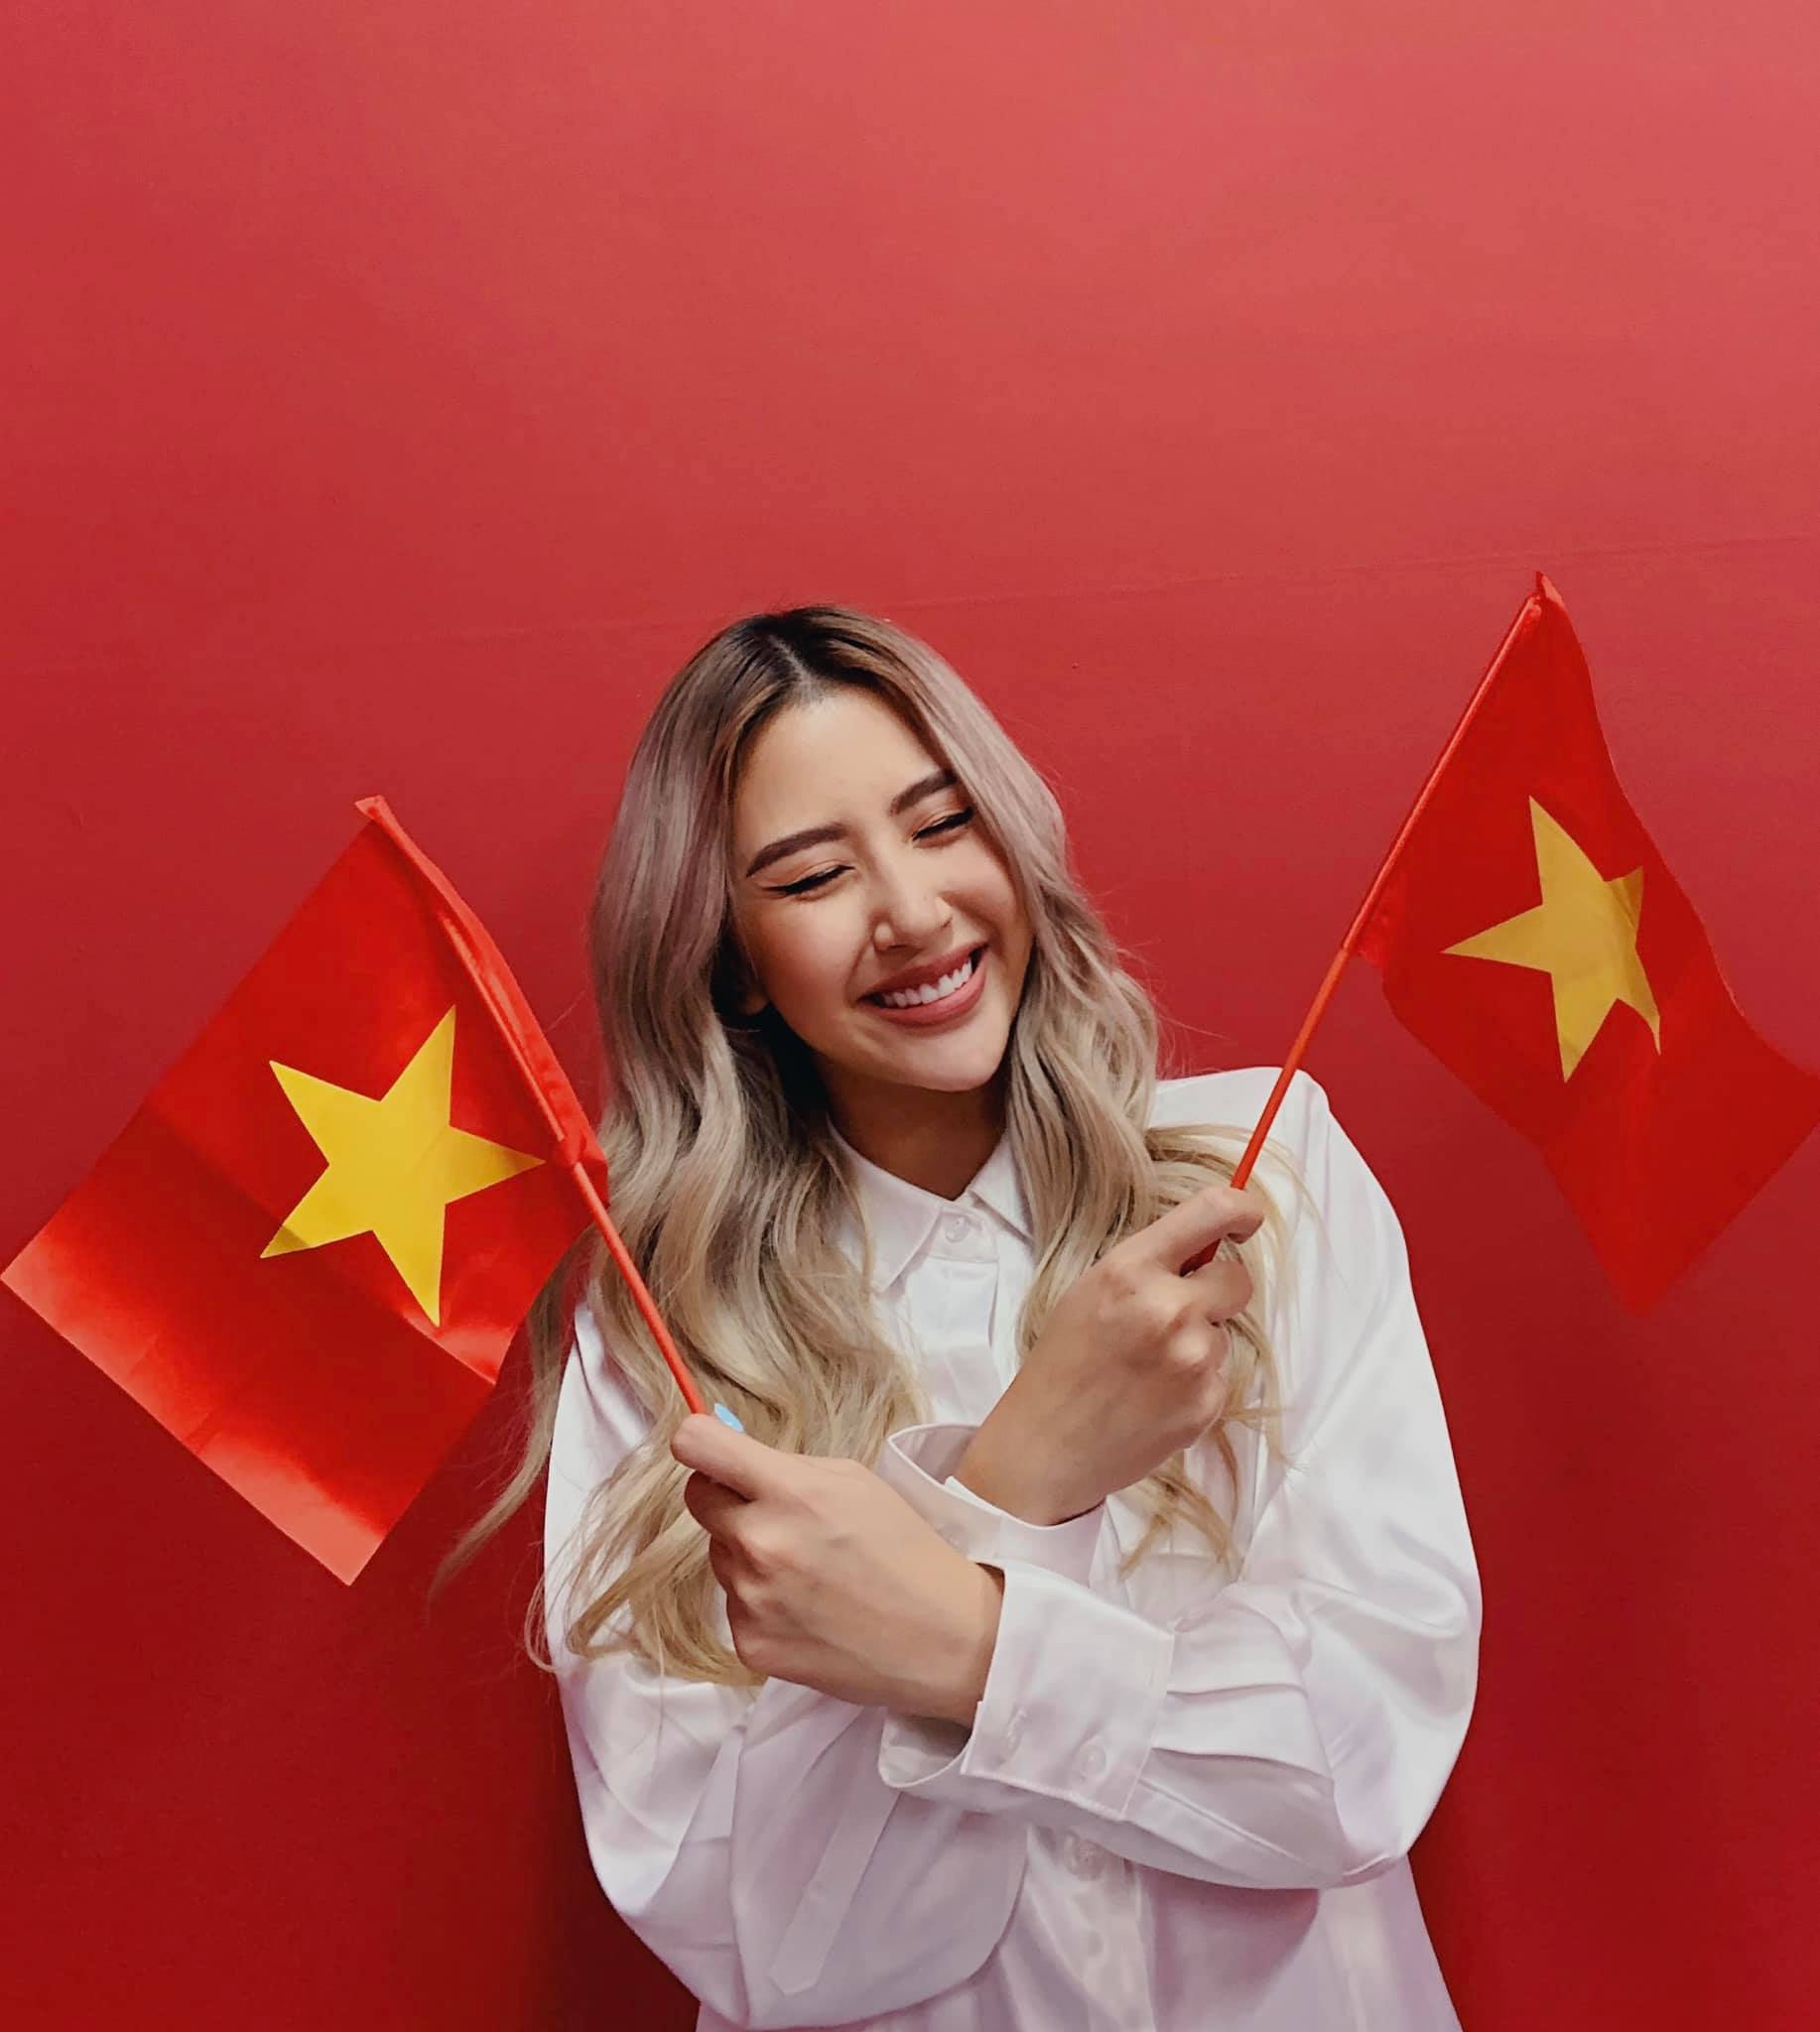 Quỳnh Anh Shyn rạng rỡ tạo dáng với background đỏ, tay cầm hai lá quốc kỳ, vui mừng đón lễ Quốc khánh bên gia đình.